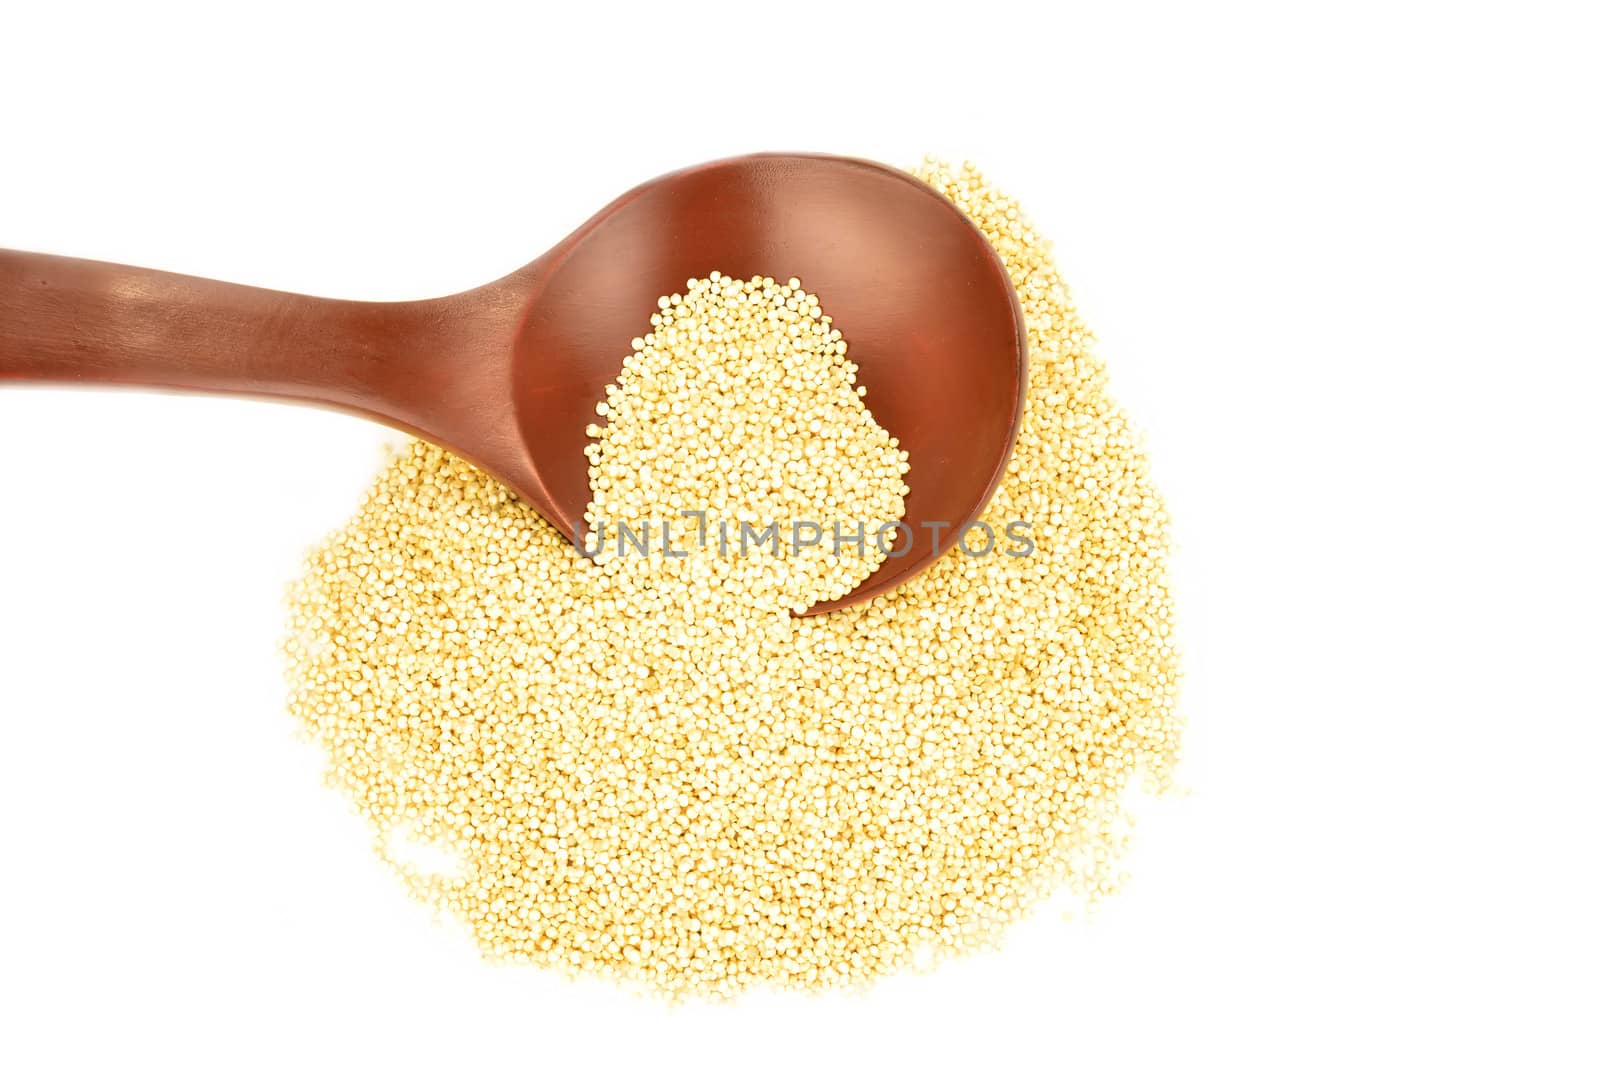 quinoa grain white background by Carche